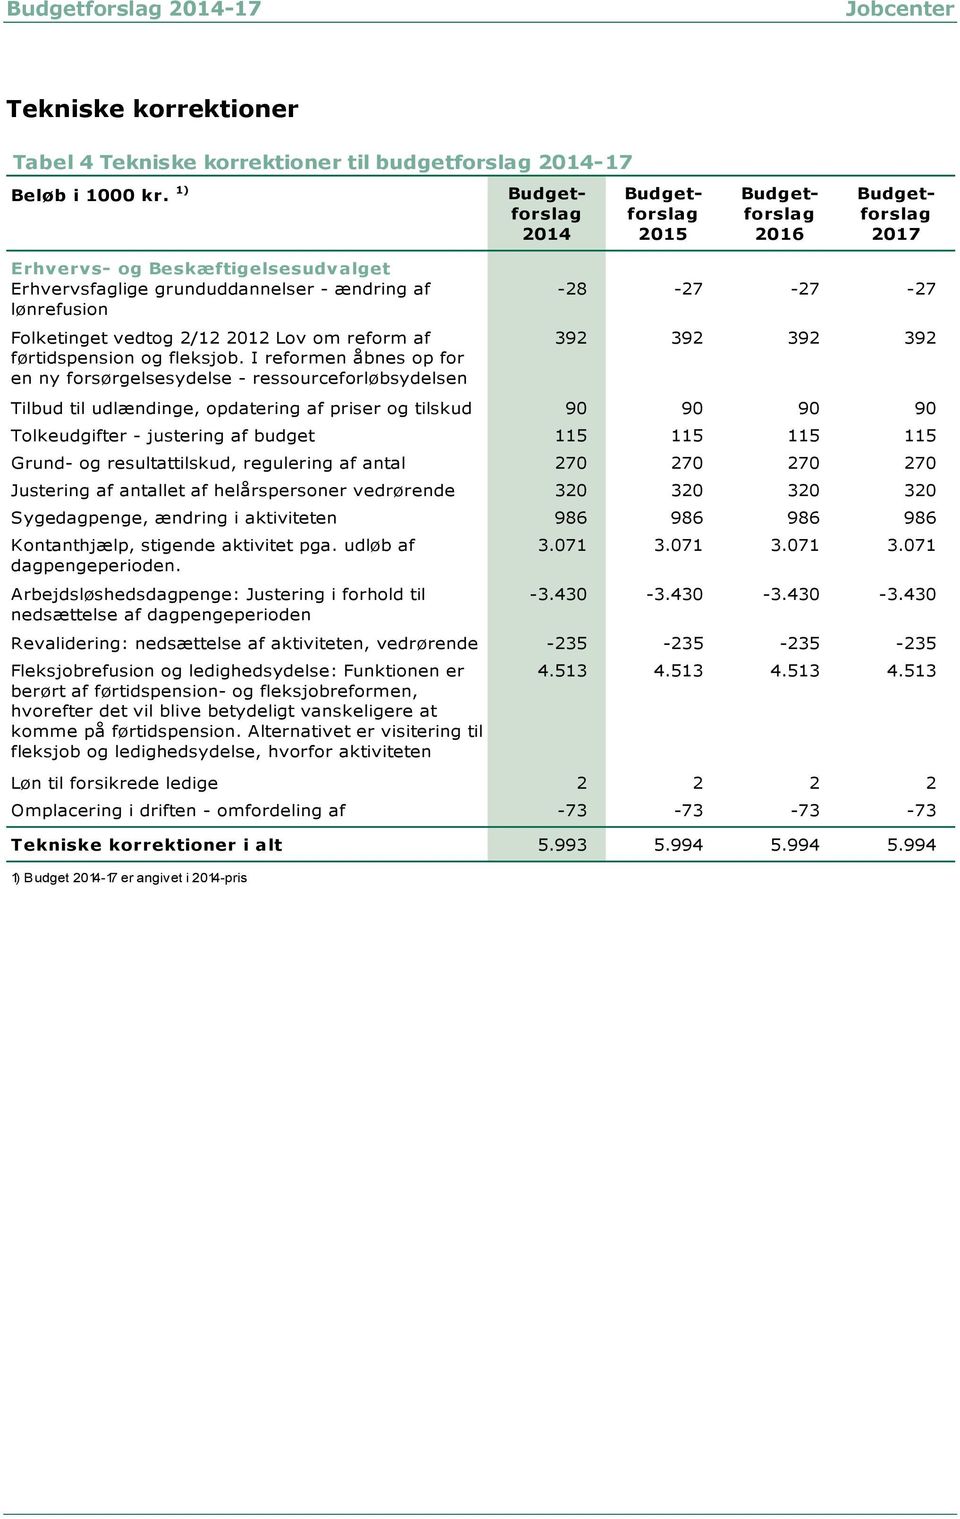 2/12 2012 Lov om reform af førtidspension og fleksjob.